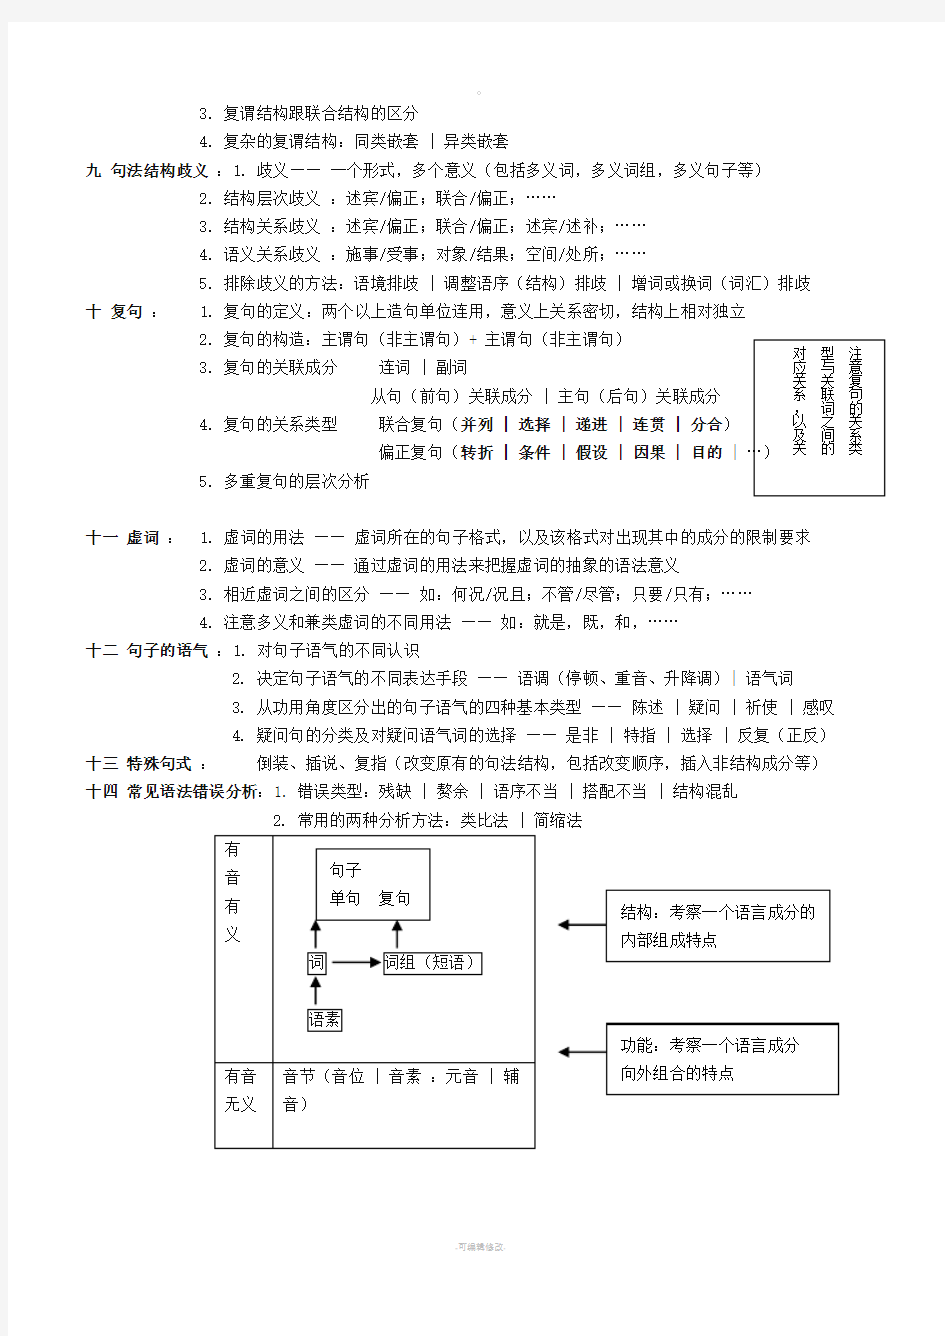 (打印)现代汉语清晰结构图